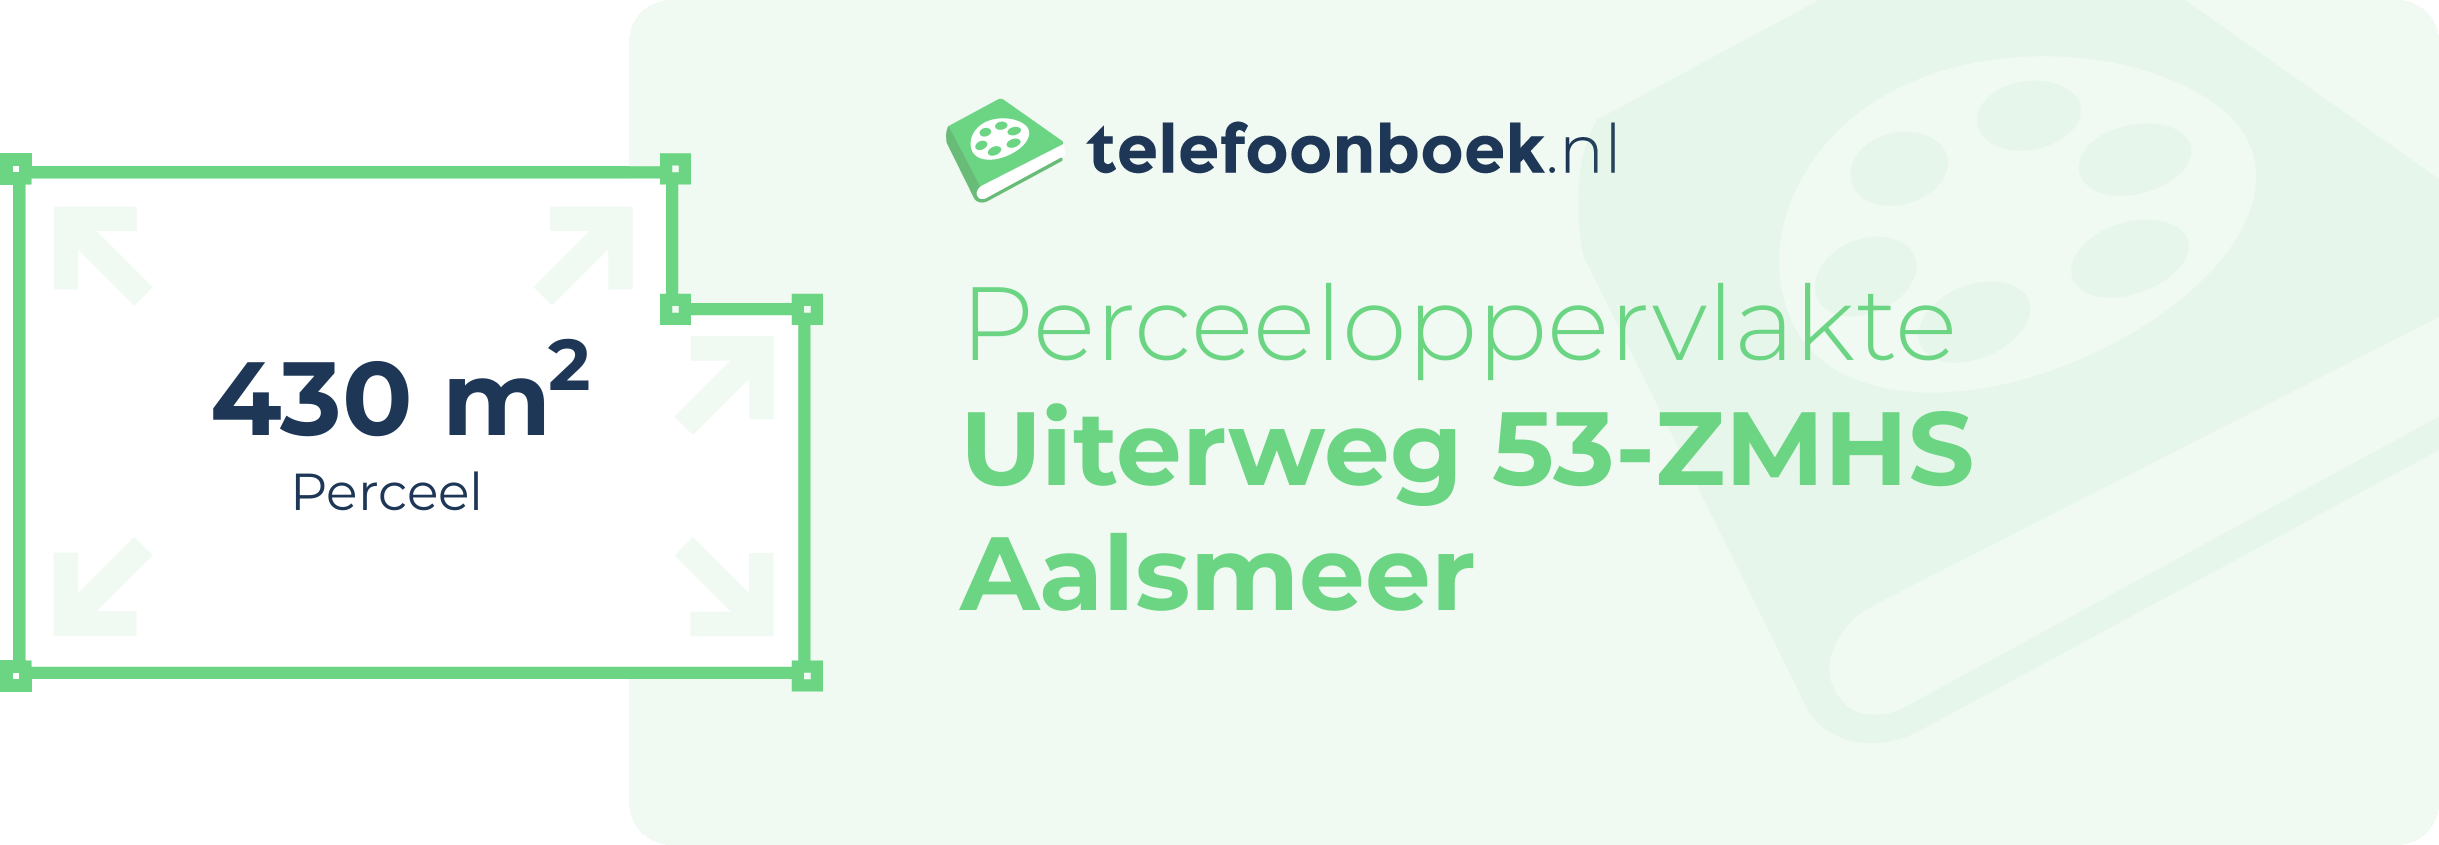 Perceeloppervlakte Uiterweg 53-ZMHS Aalsmeer